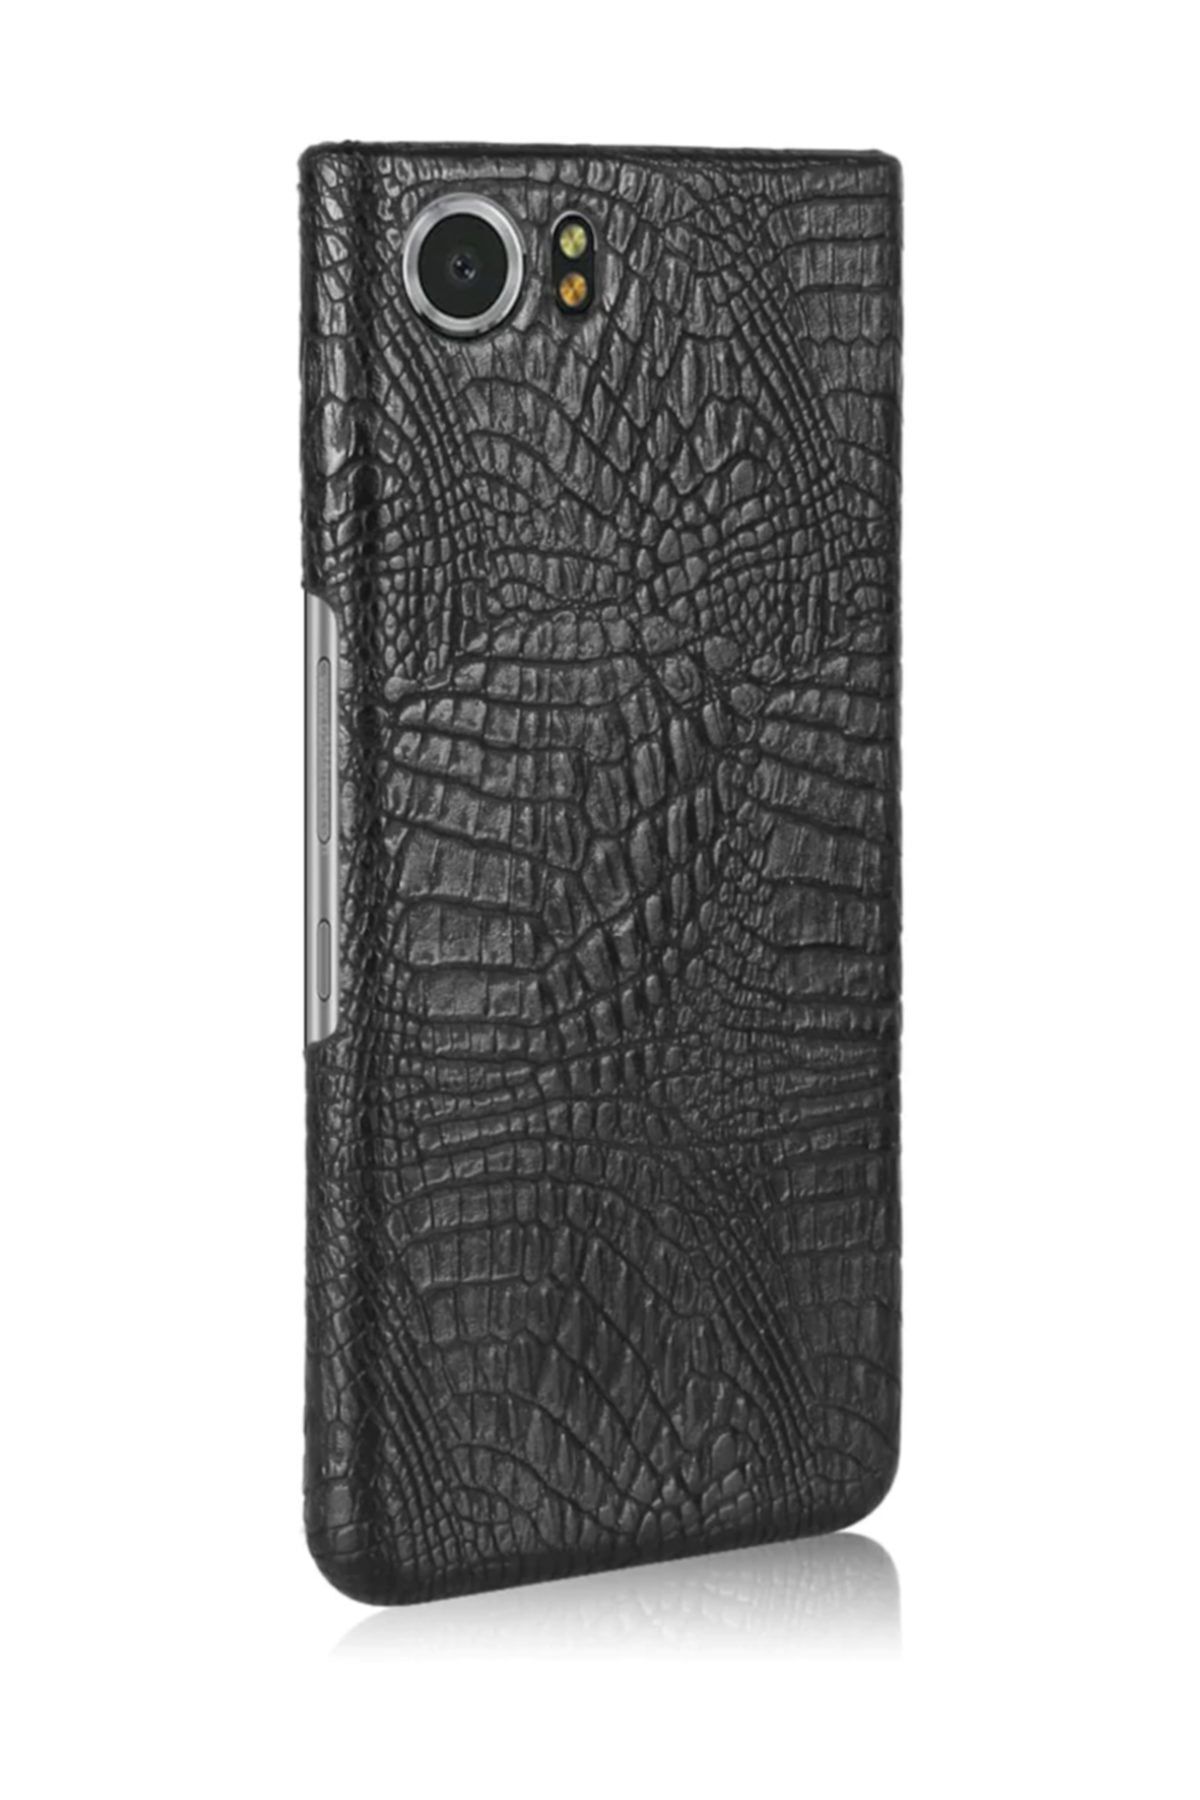 Microcase Blackberry Keyone Crocodile Timsah Deri Kaplama Sert Rubber Kılıf - Siyah